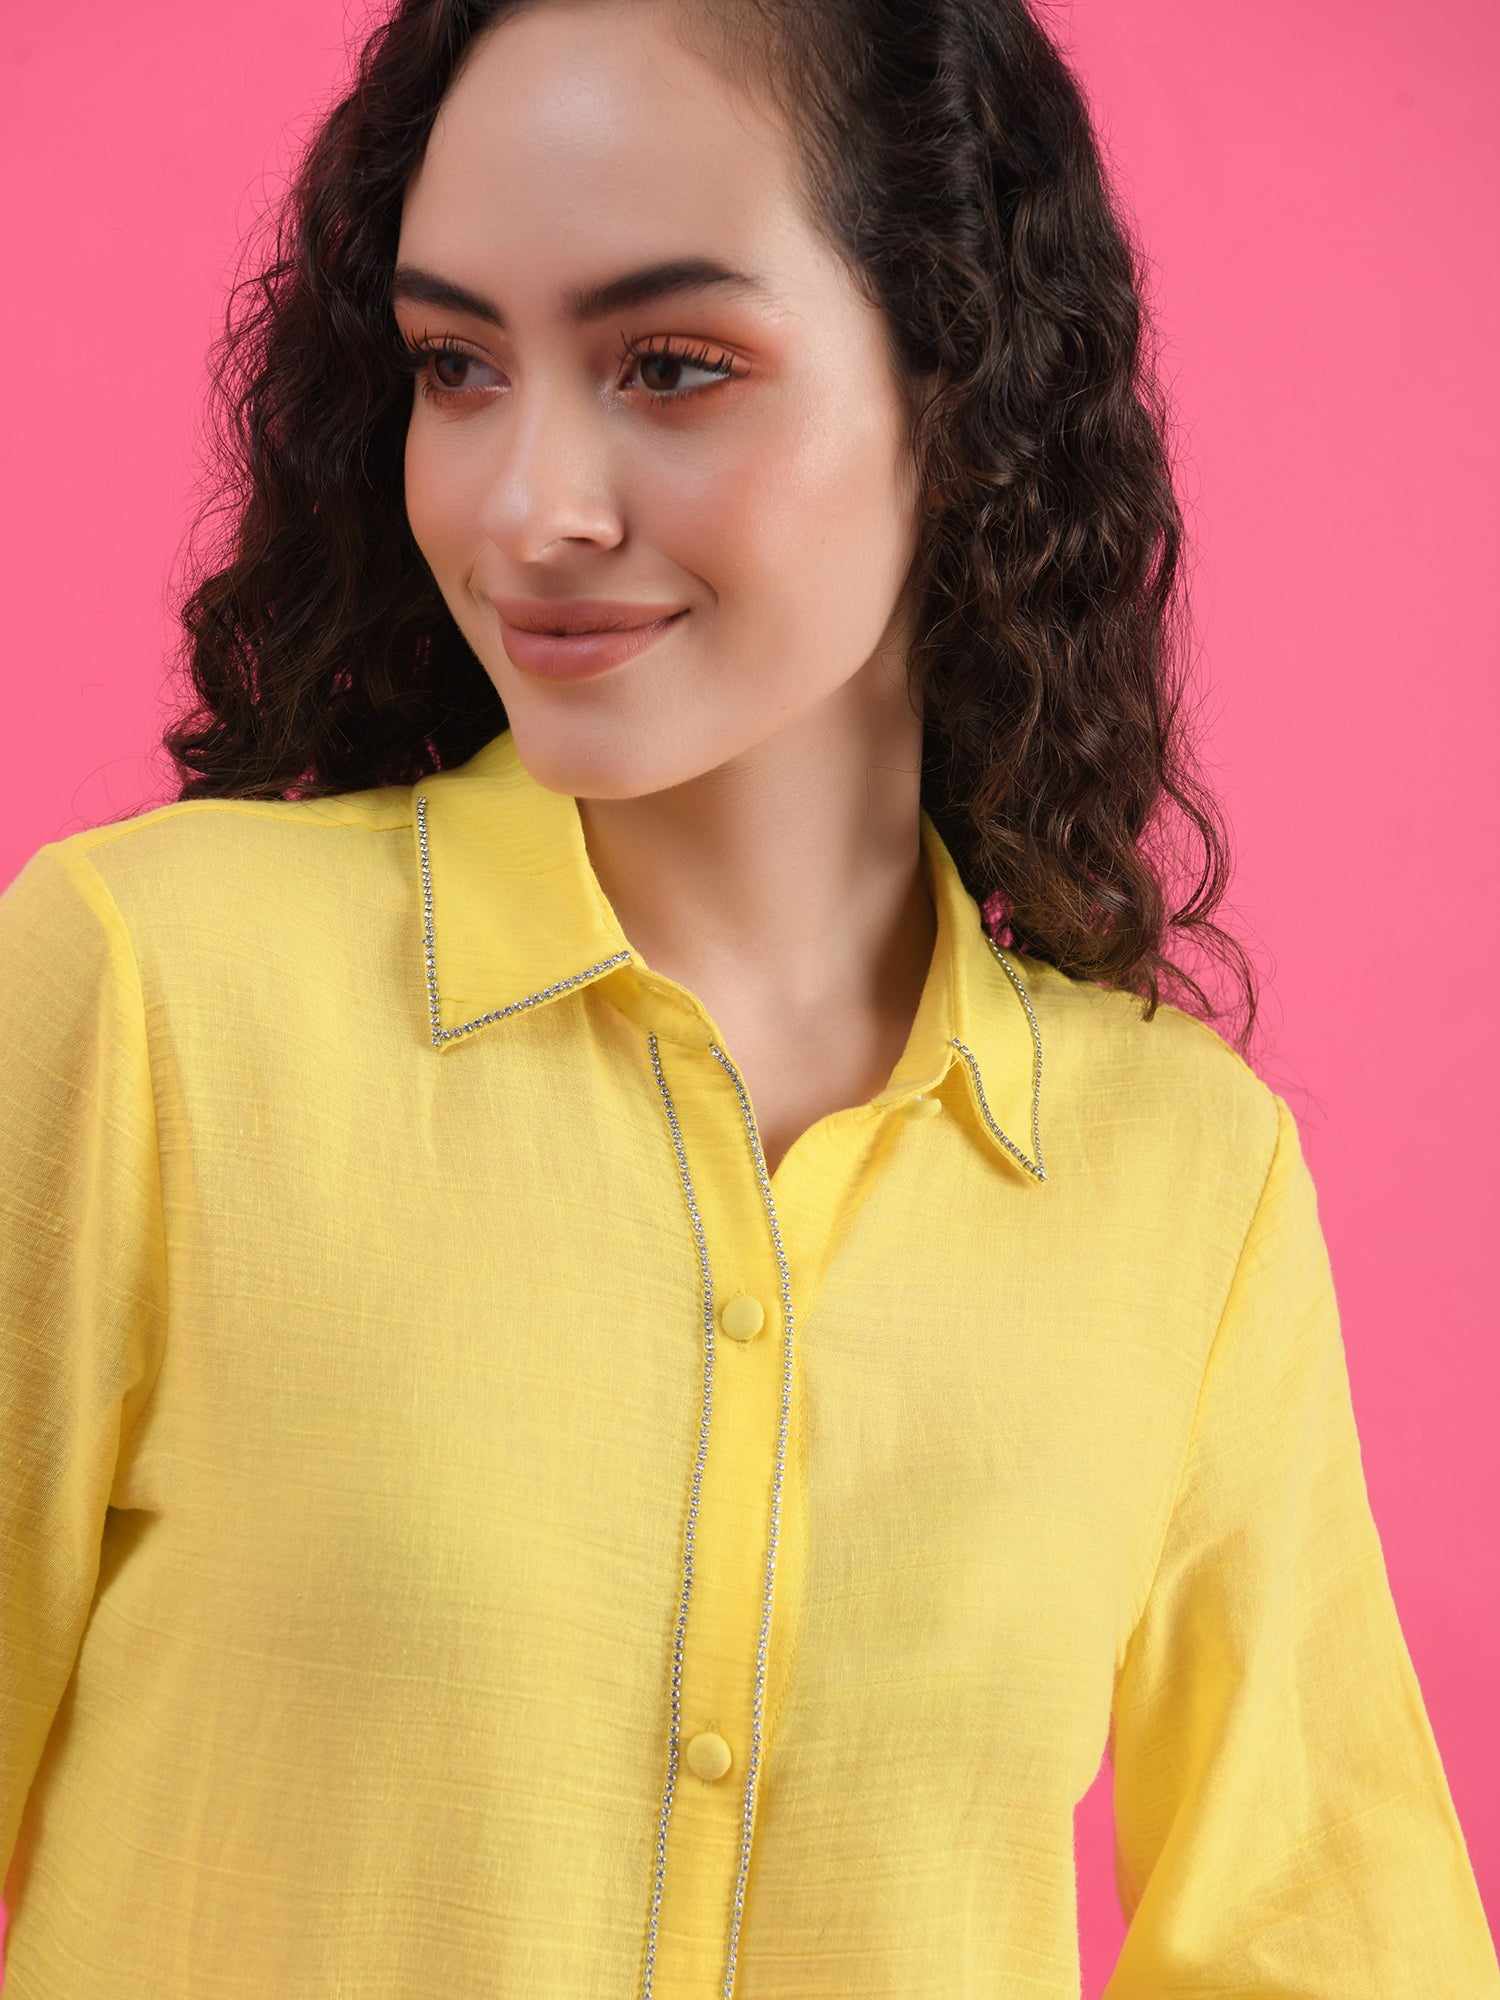 deluxe embellished yellow shirt